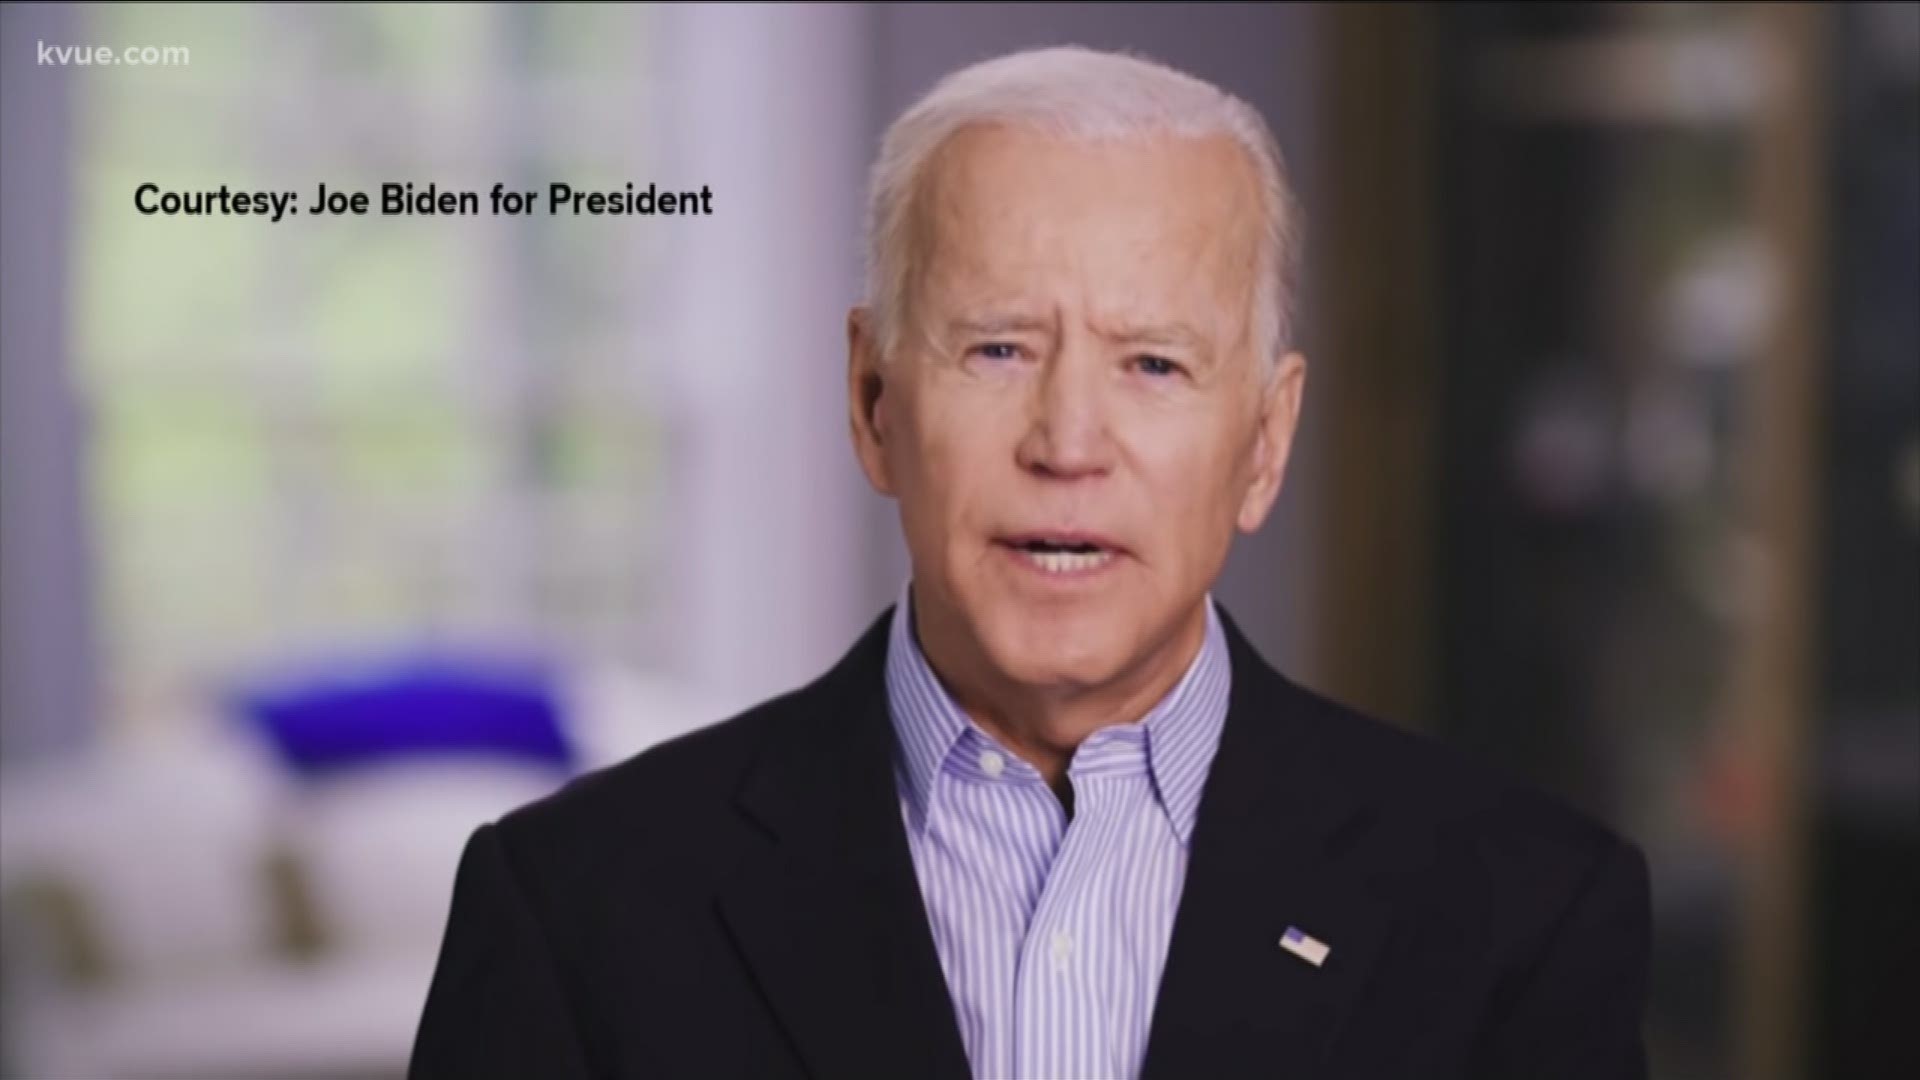 Former Vice President Joe Biden announced Thursday that he is running for president.